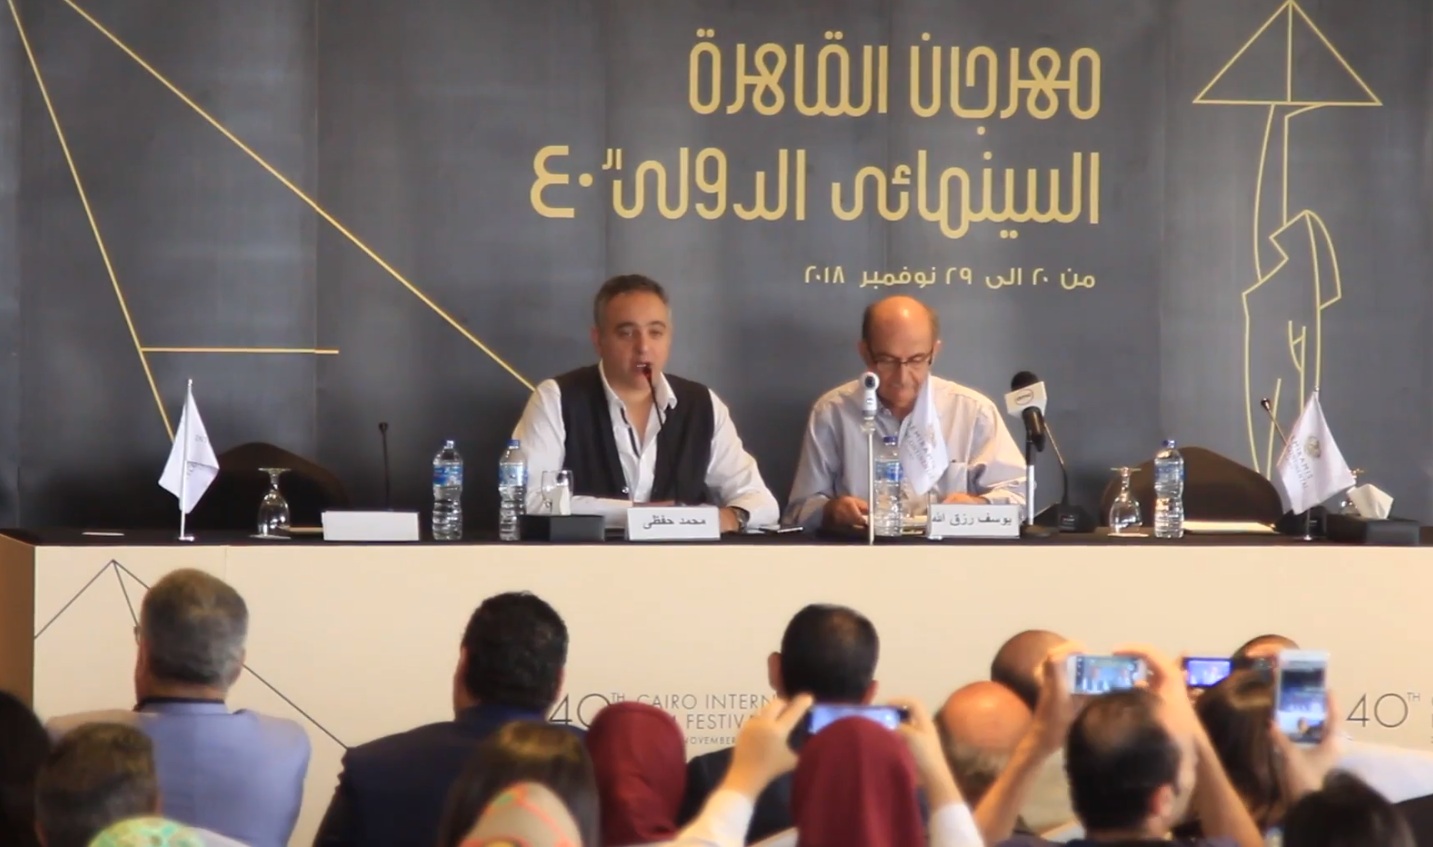 الندوة الصحفية للاعلان عن برمجة الدورة 40 لمهرجان القاهرة السينمائي